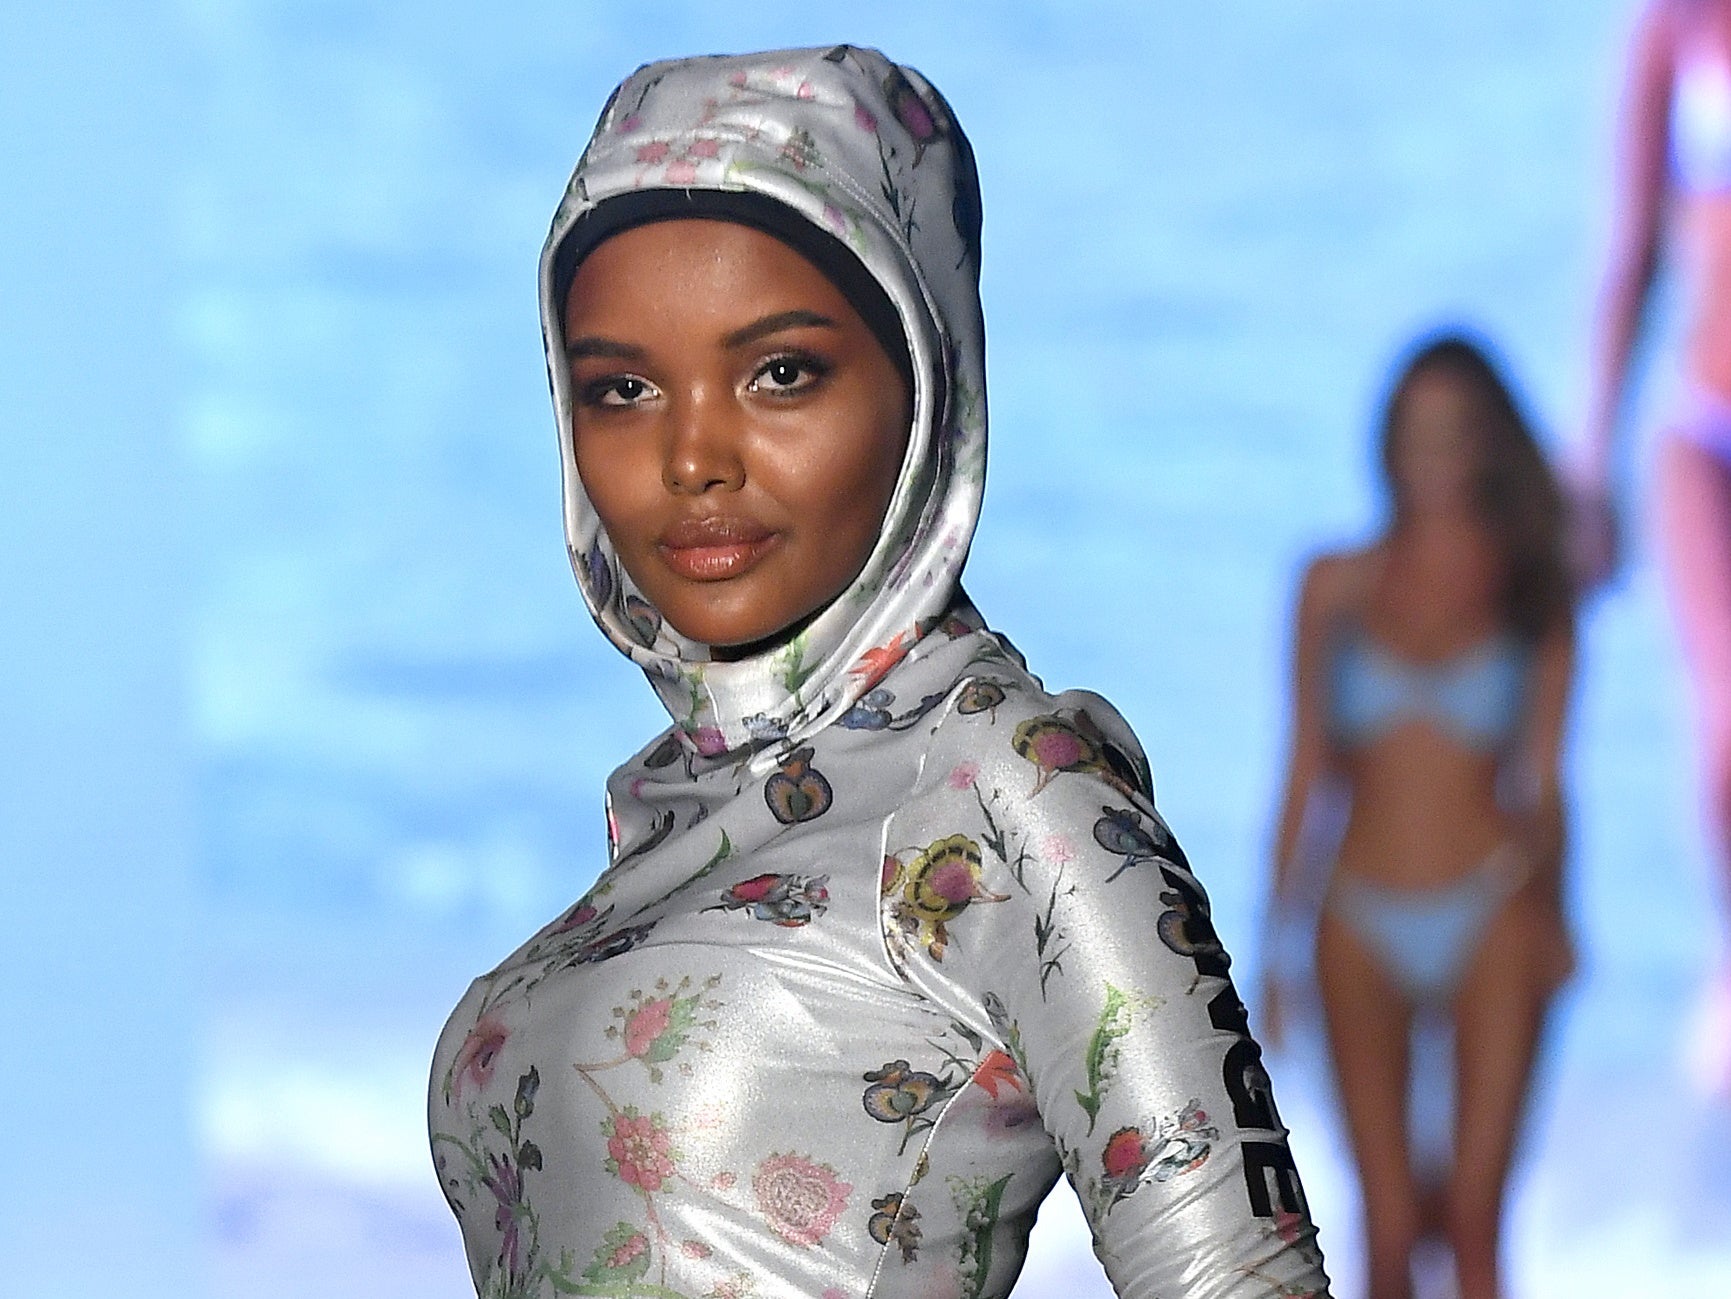 Cynthia Rowley Made A Custom Burkini For Muslim Model Halima Aden